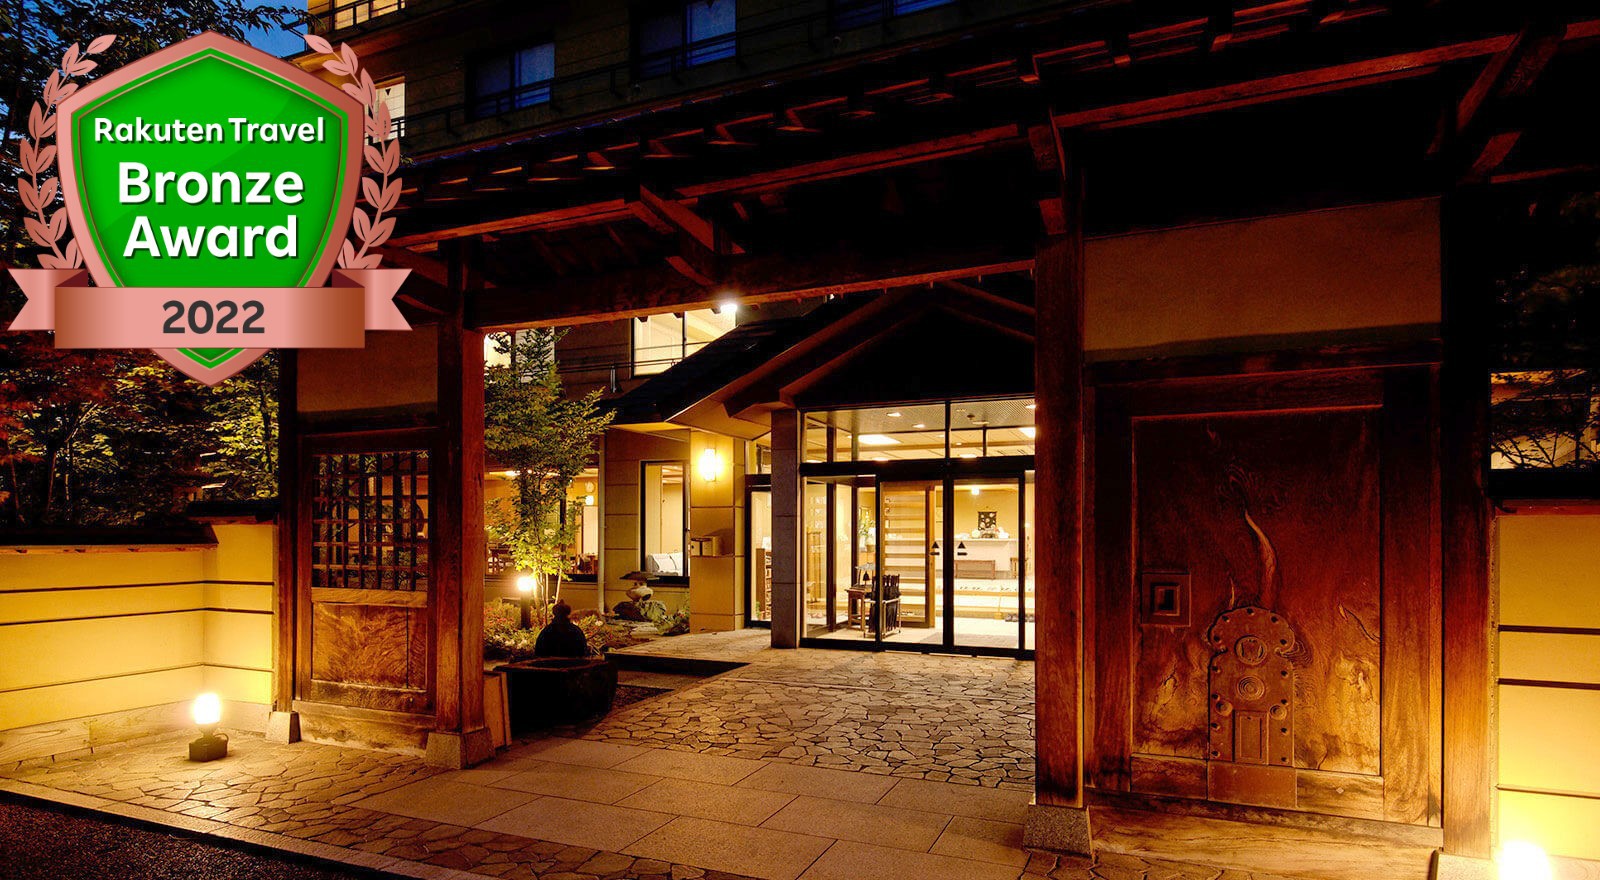 志賀高原スキー場から近く温泉のあるホテル、温泉宿のおすすめを教えて